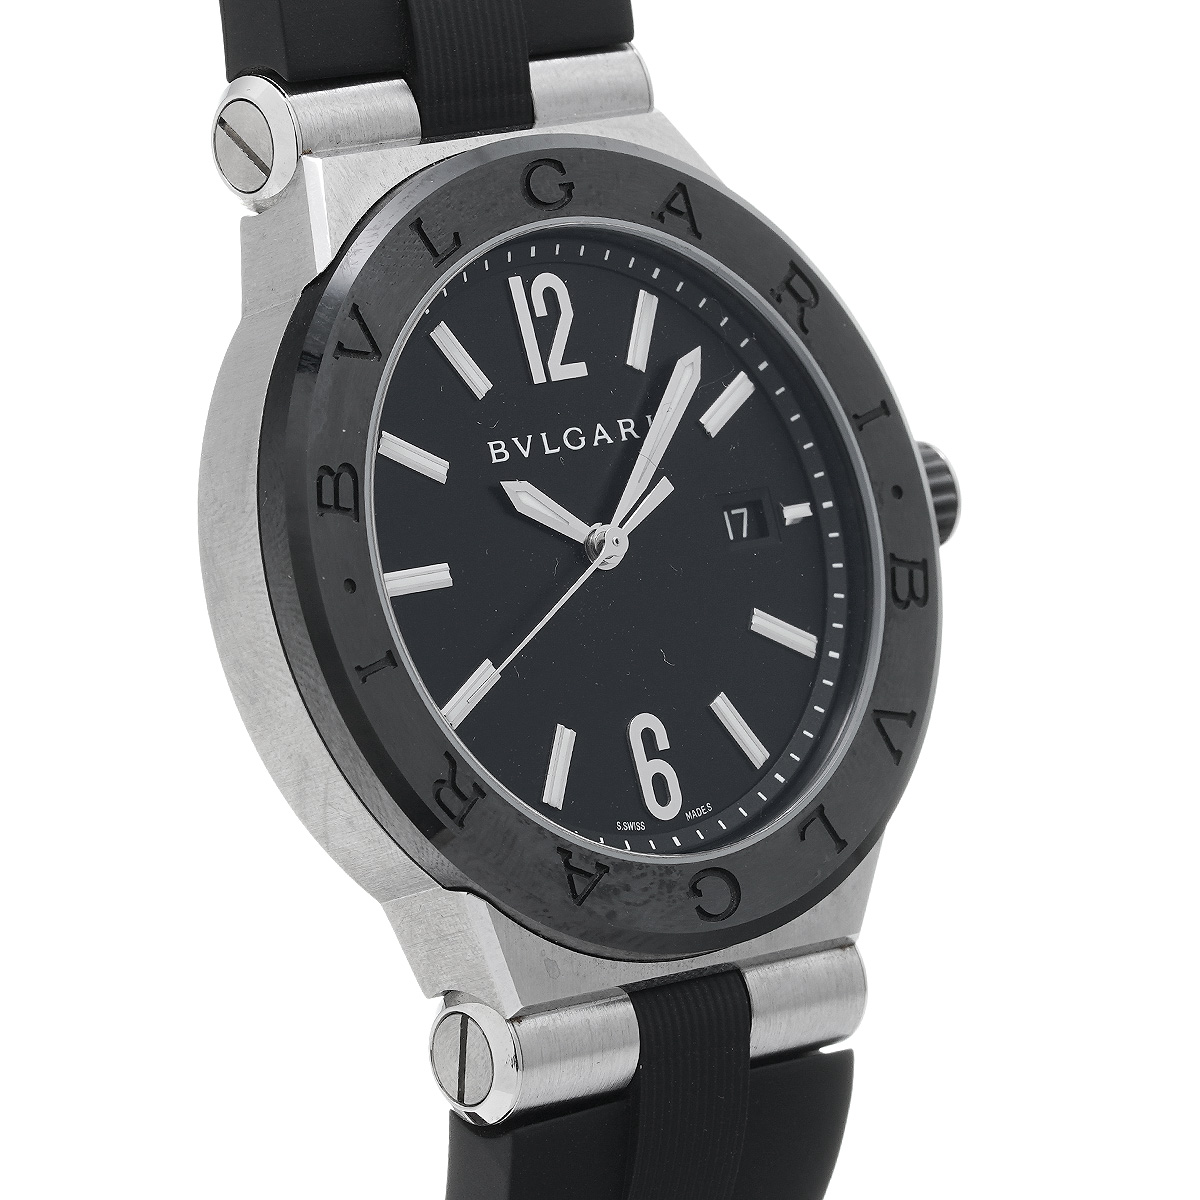 ブルガリ BVLGARI DG42SC ブラック メンズ 腕時計